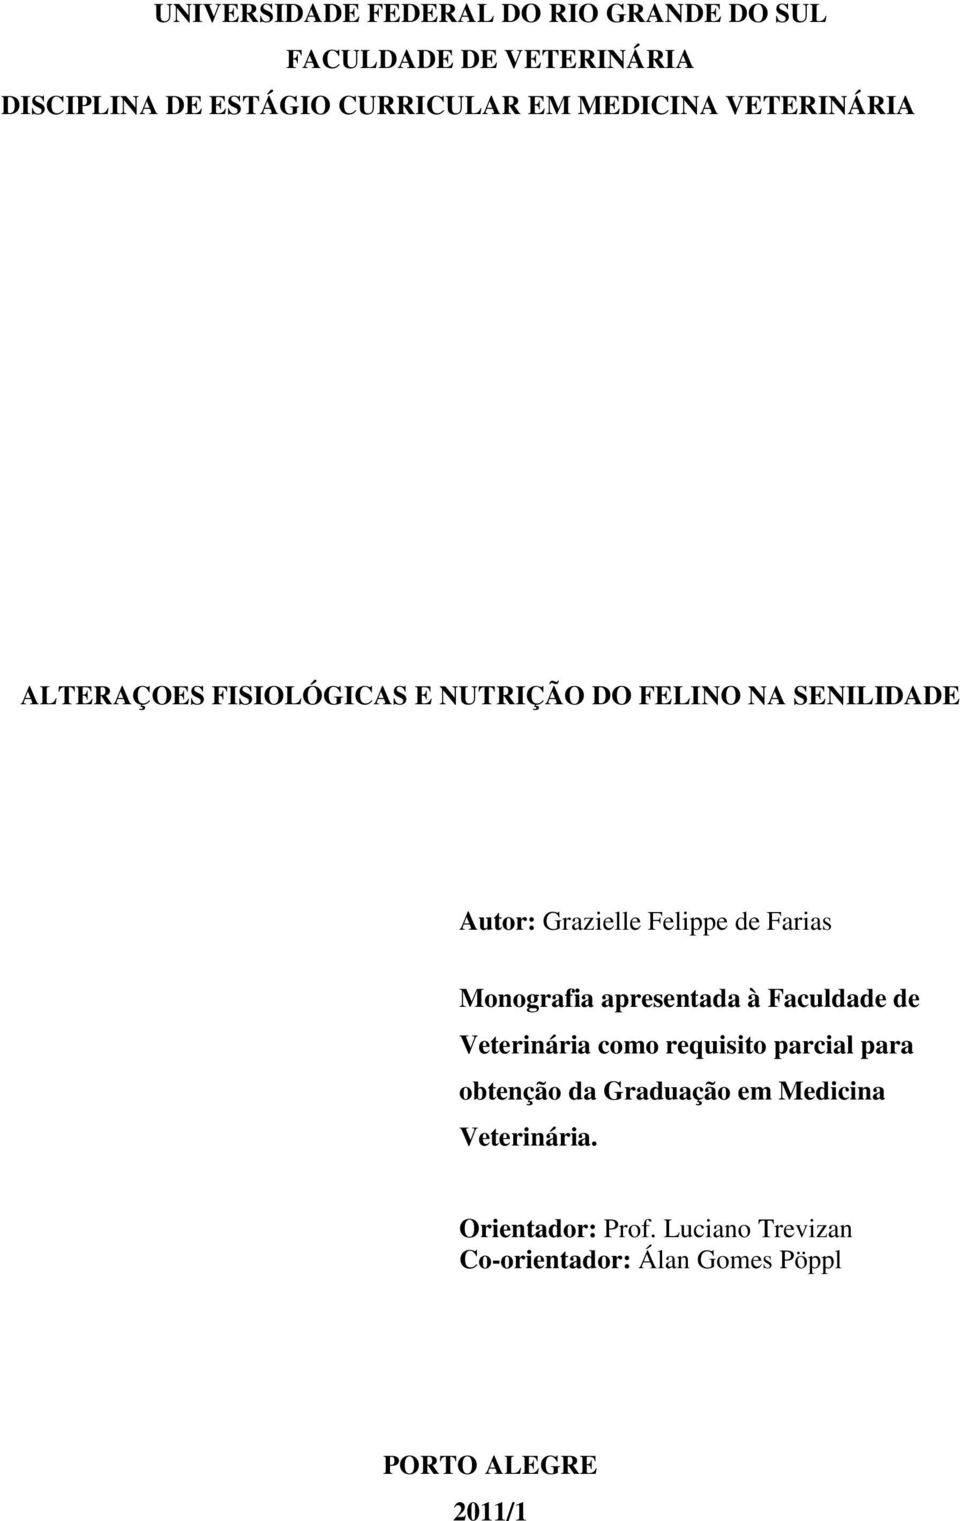 Farias Monografia apresentada à Faculdade de Veterinária como requisito parcial para obtenção da Graduação